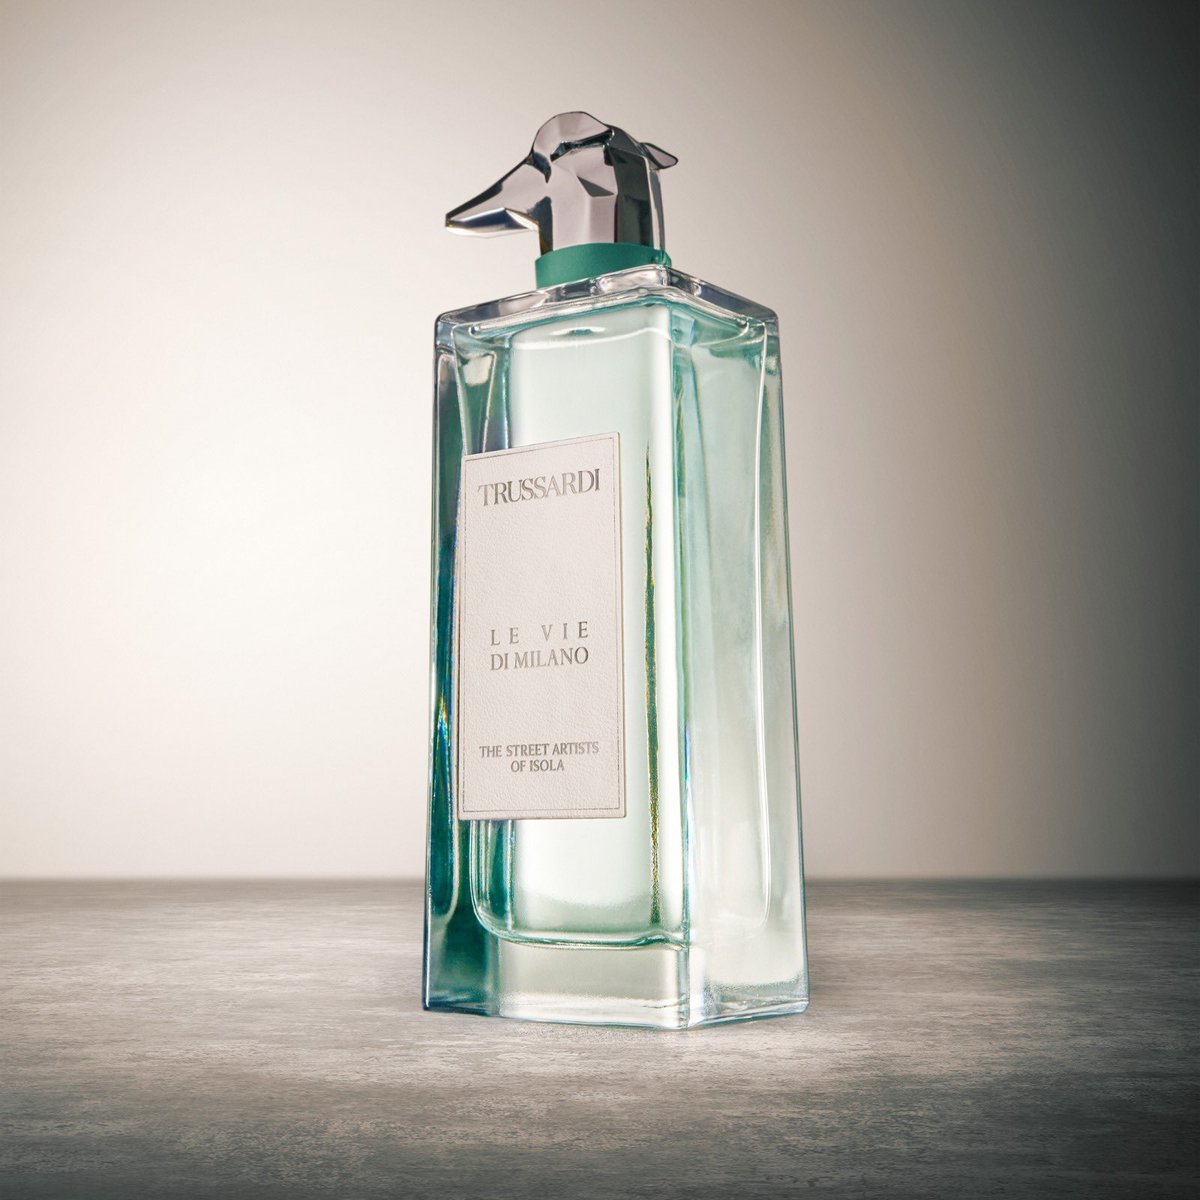 Milano’nun sofistike ruhunu Trussardi’nin “Le Vie di Milano” parfümleri ile canlandırın.

#Trussardi #KokunlaSevil #milano